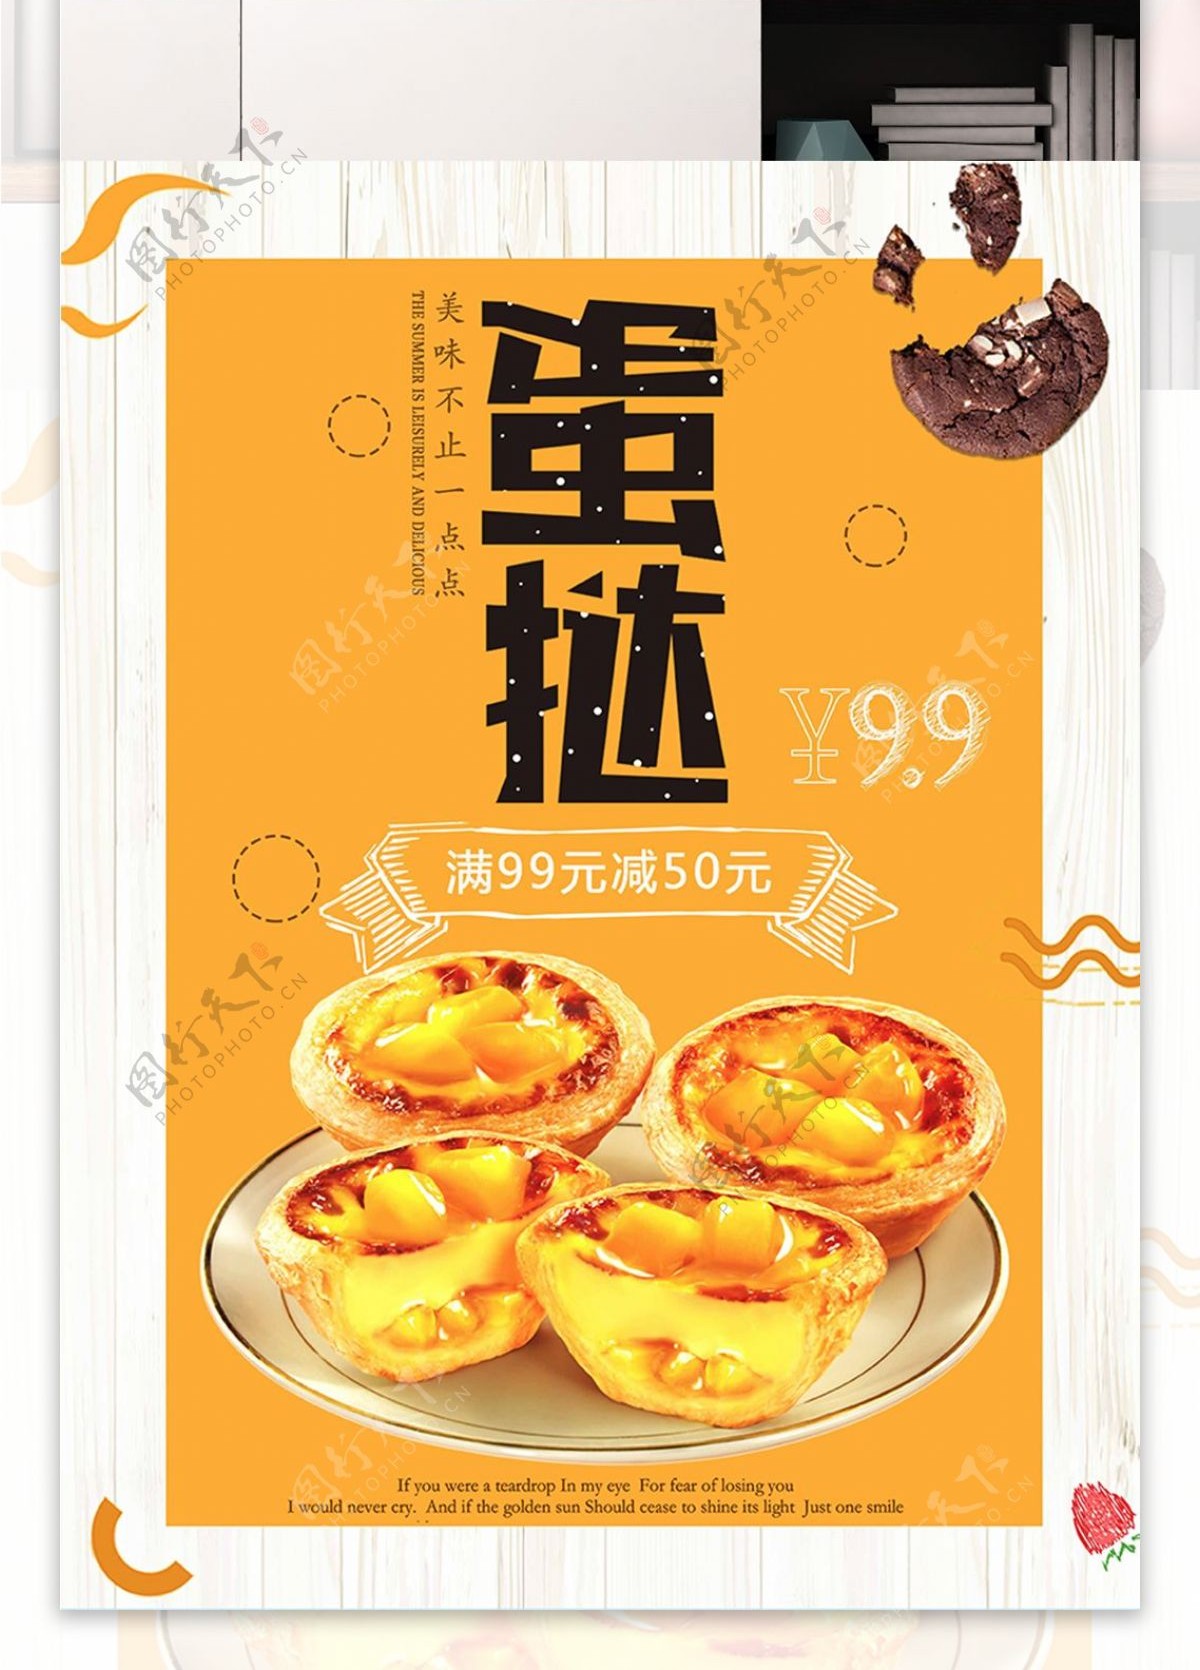 黄色背景简约大气美味蛋挞宣传海报